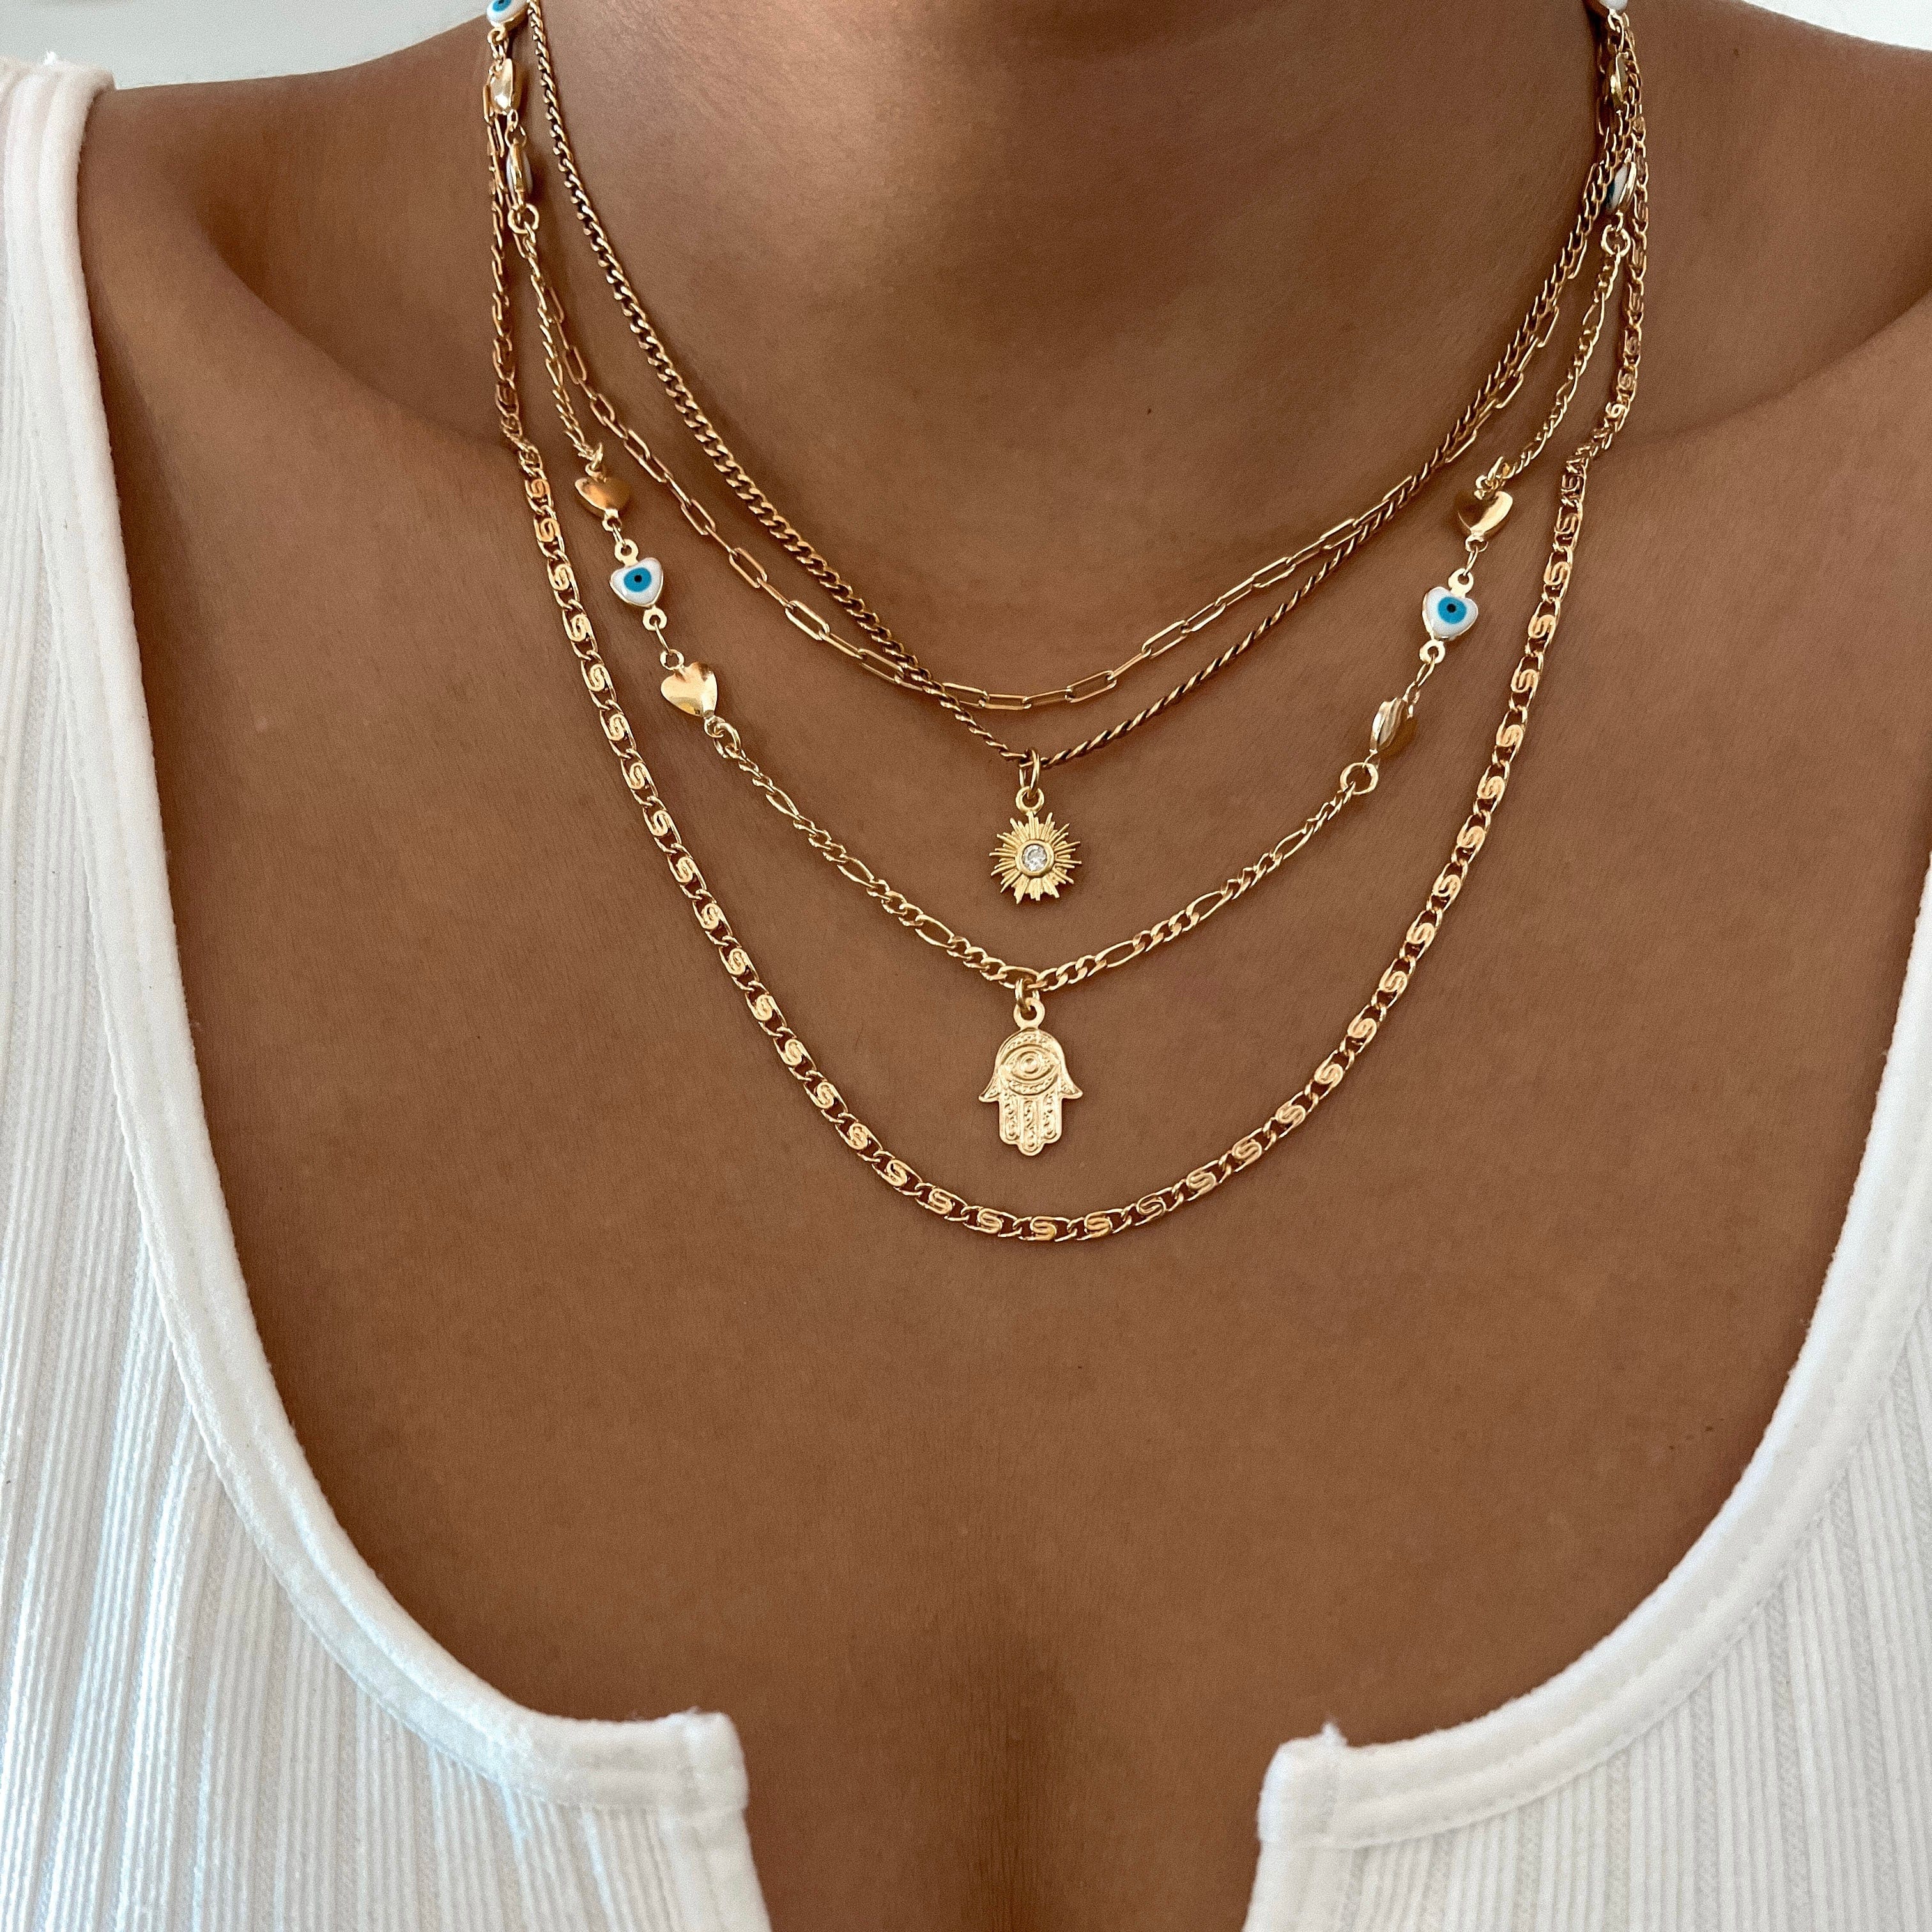 LE sensor necklace Shiloh Chain Necklace 20”